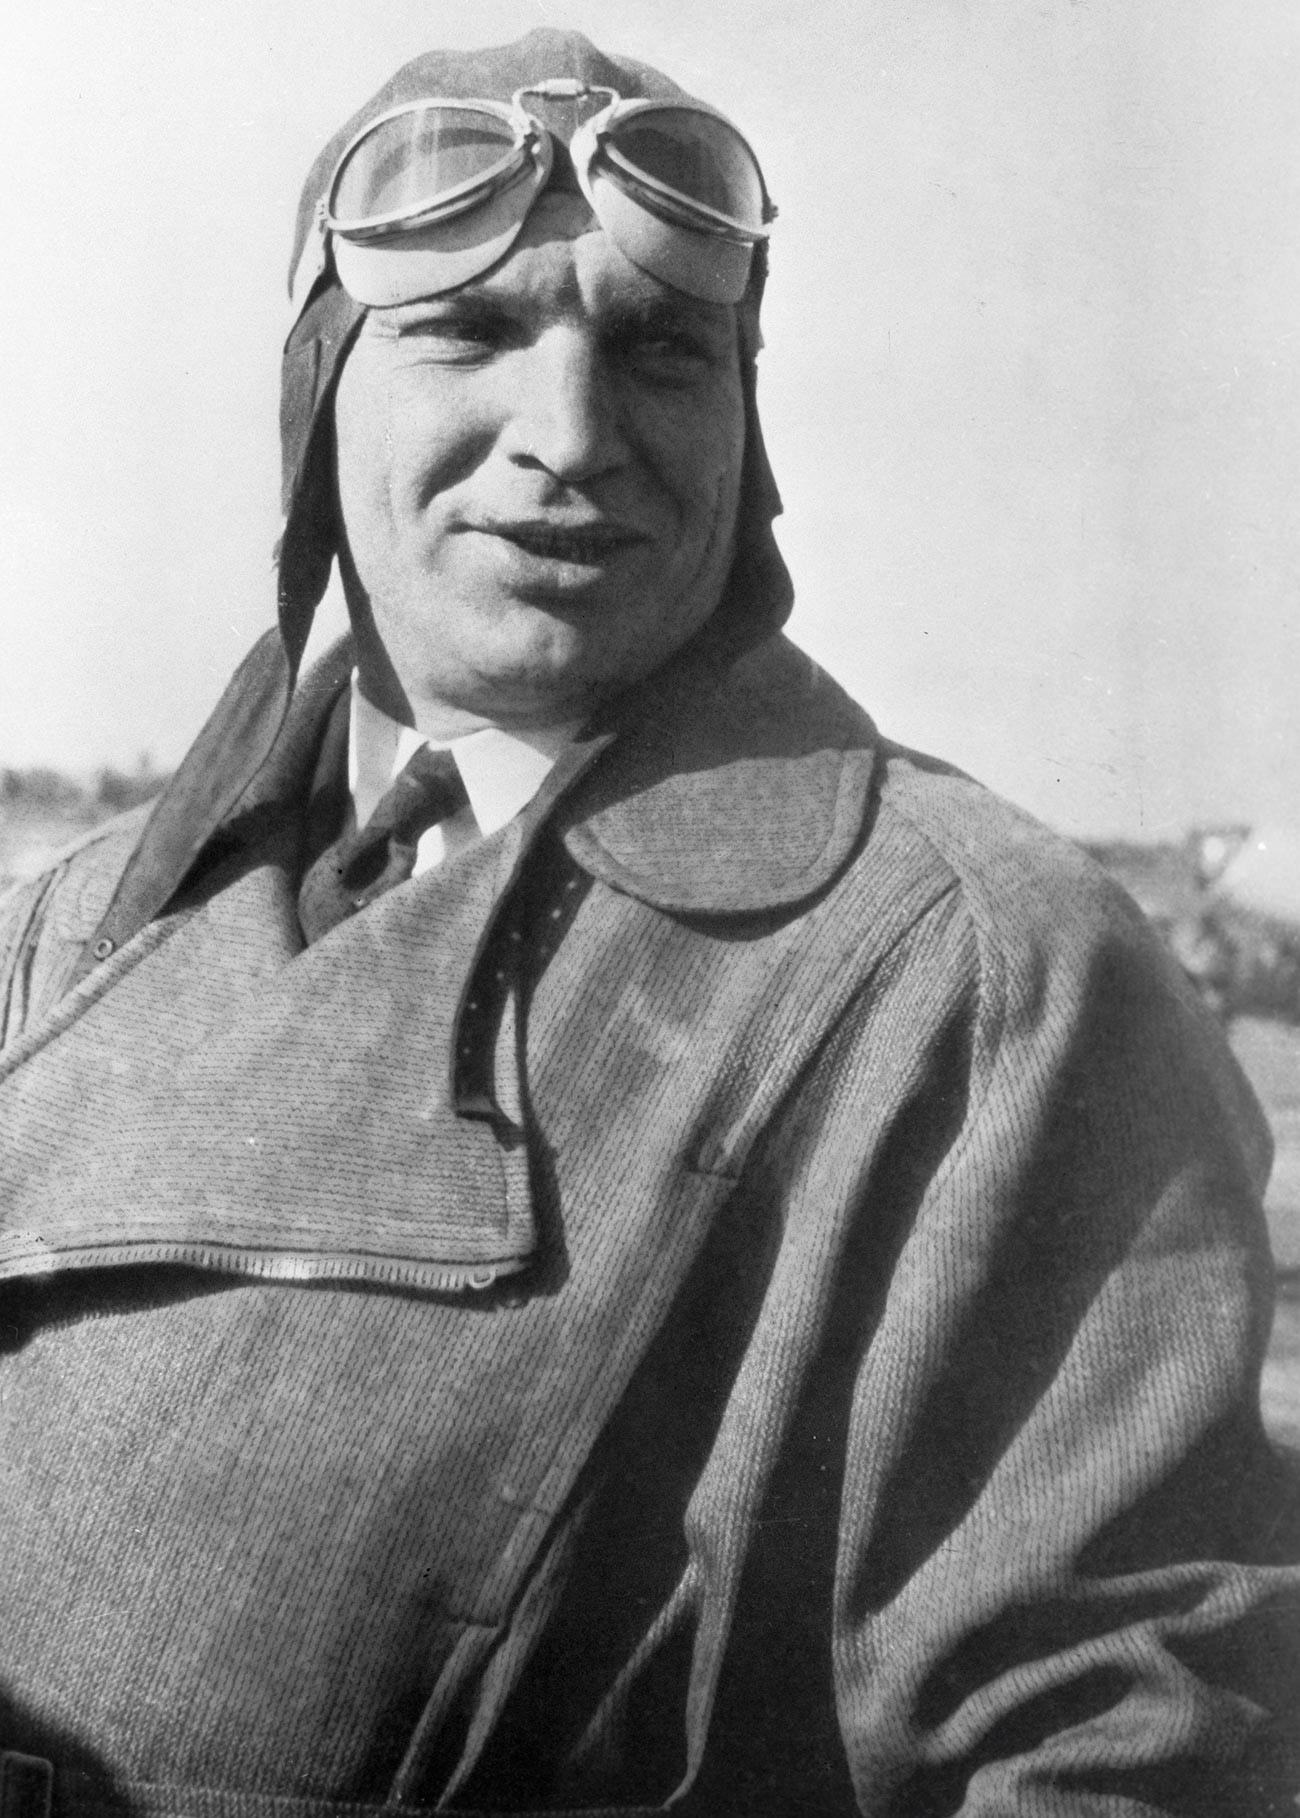 Пробни пилот Валериј Чкалов (1904-1938), Херој Совјетског Савеза. Погинуо 15. децембра 1938. године за време првог пробног лета у новом ловцу И-180.